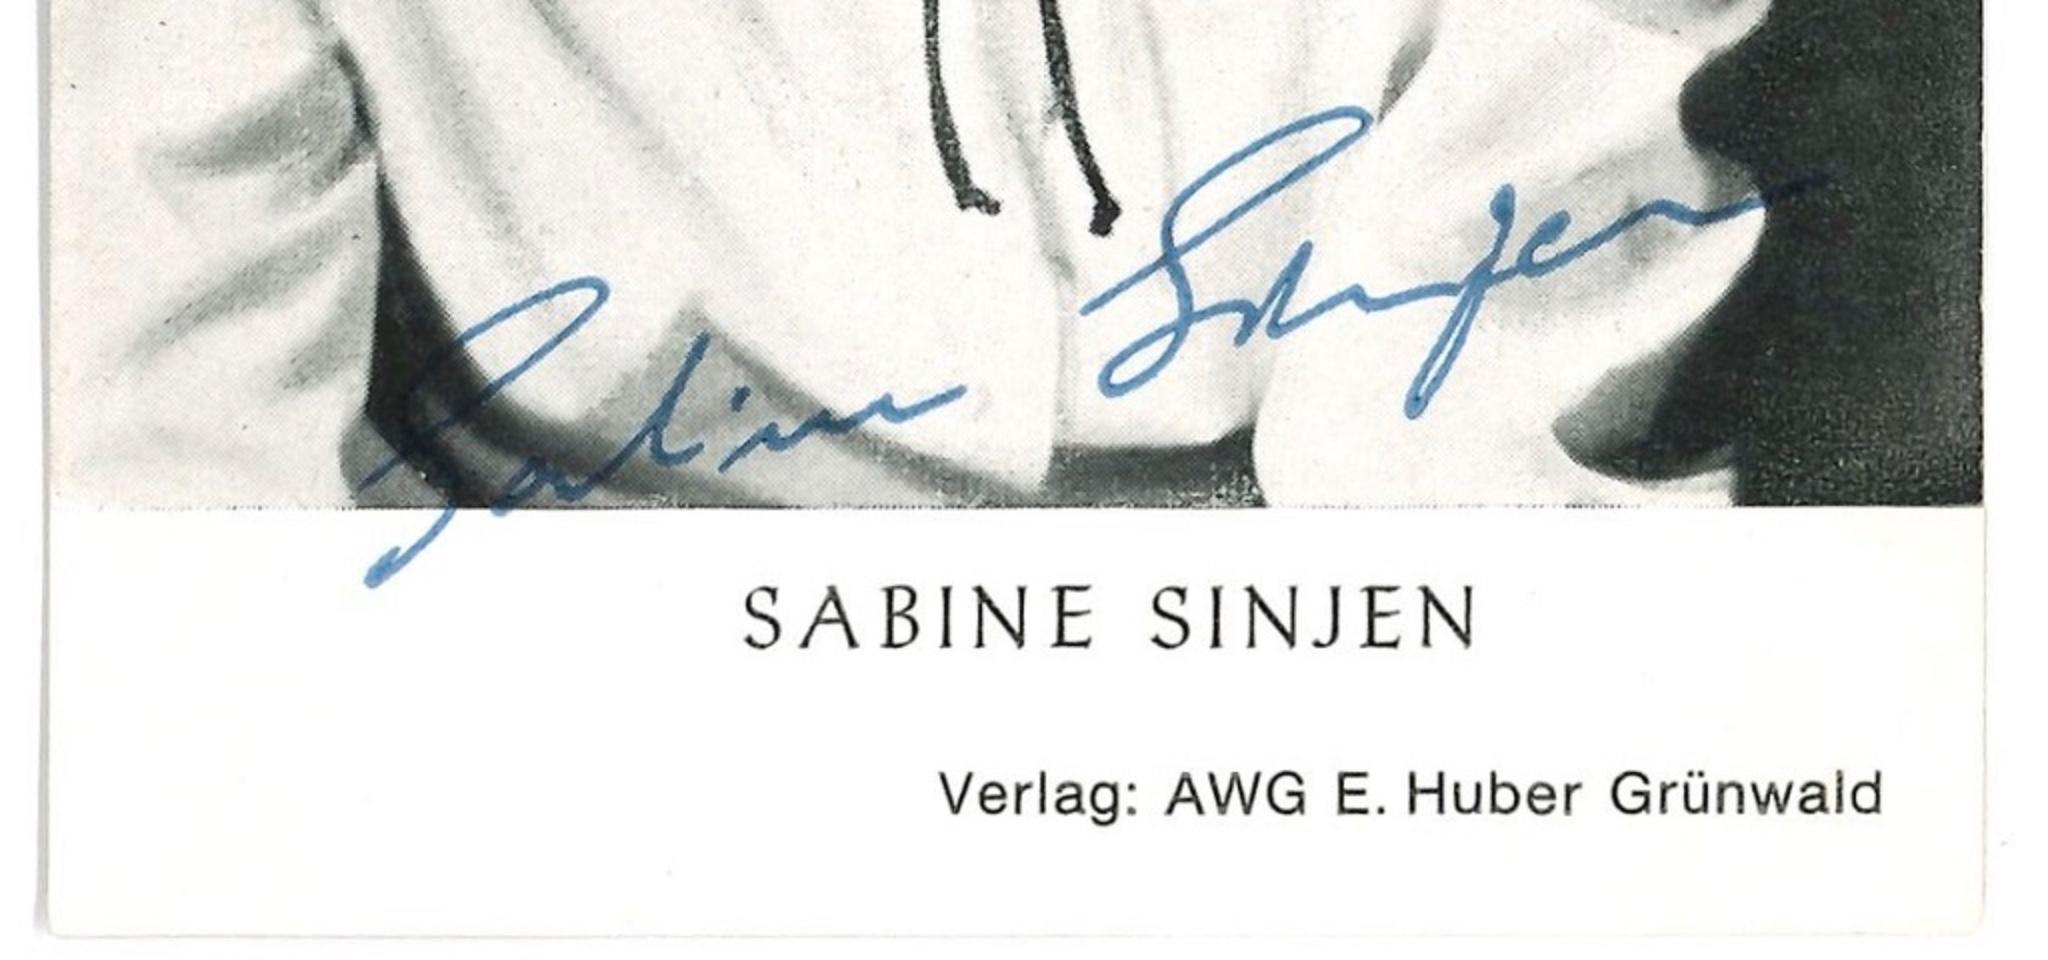 Autographed Portrait of Sabine Sinjen - Vintage b/w Postcard - 1960s - Photograph by Unknown